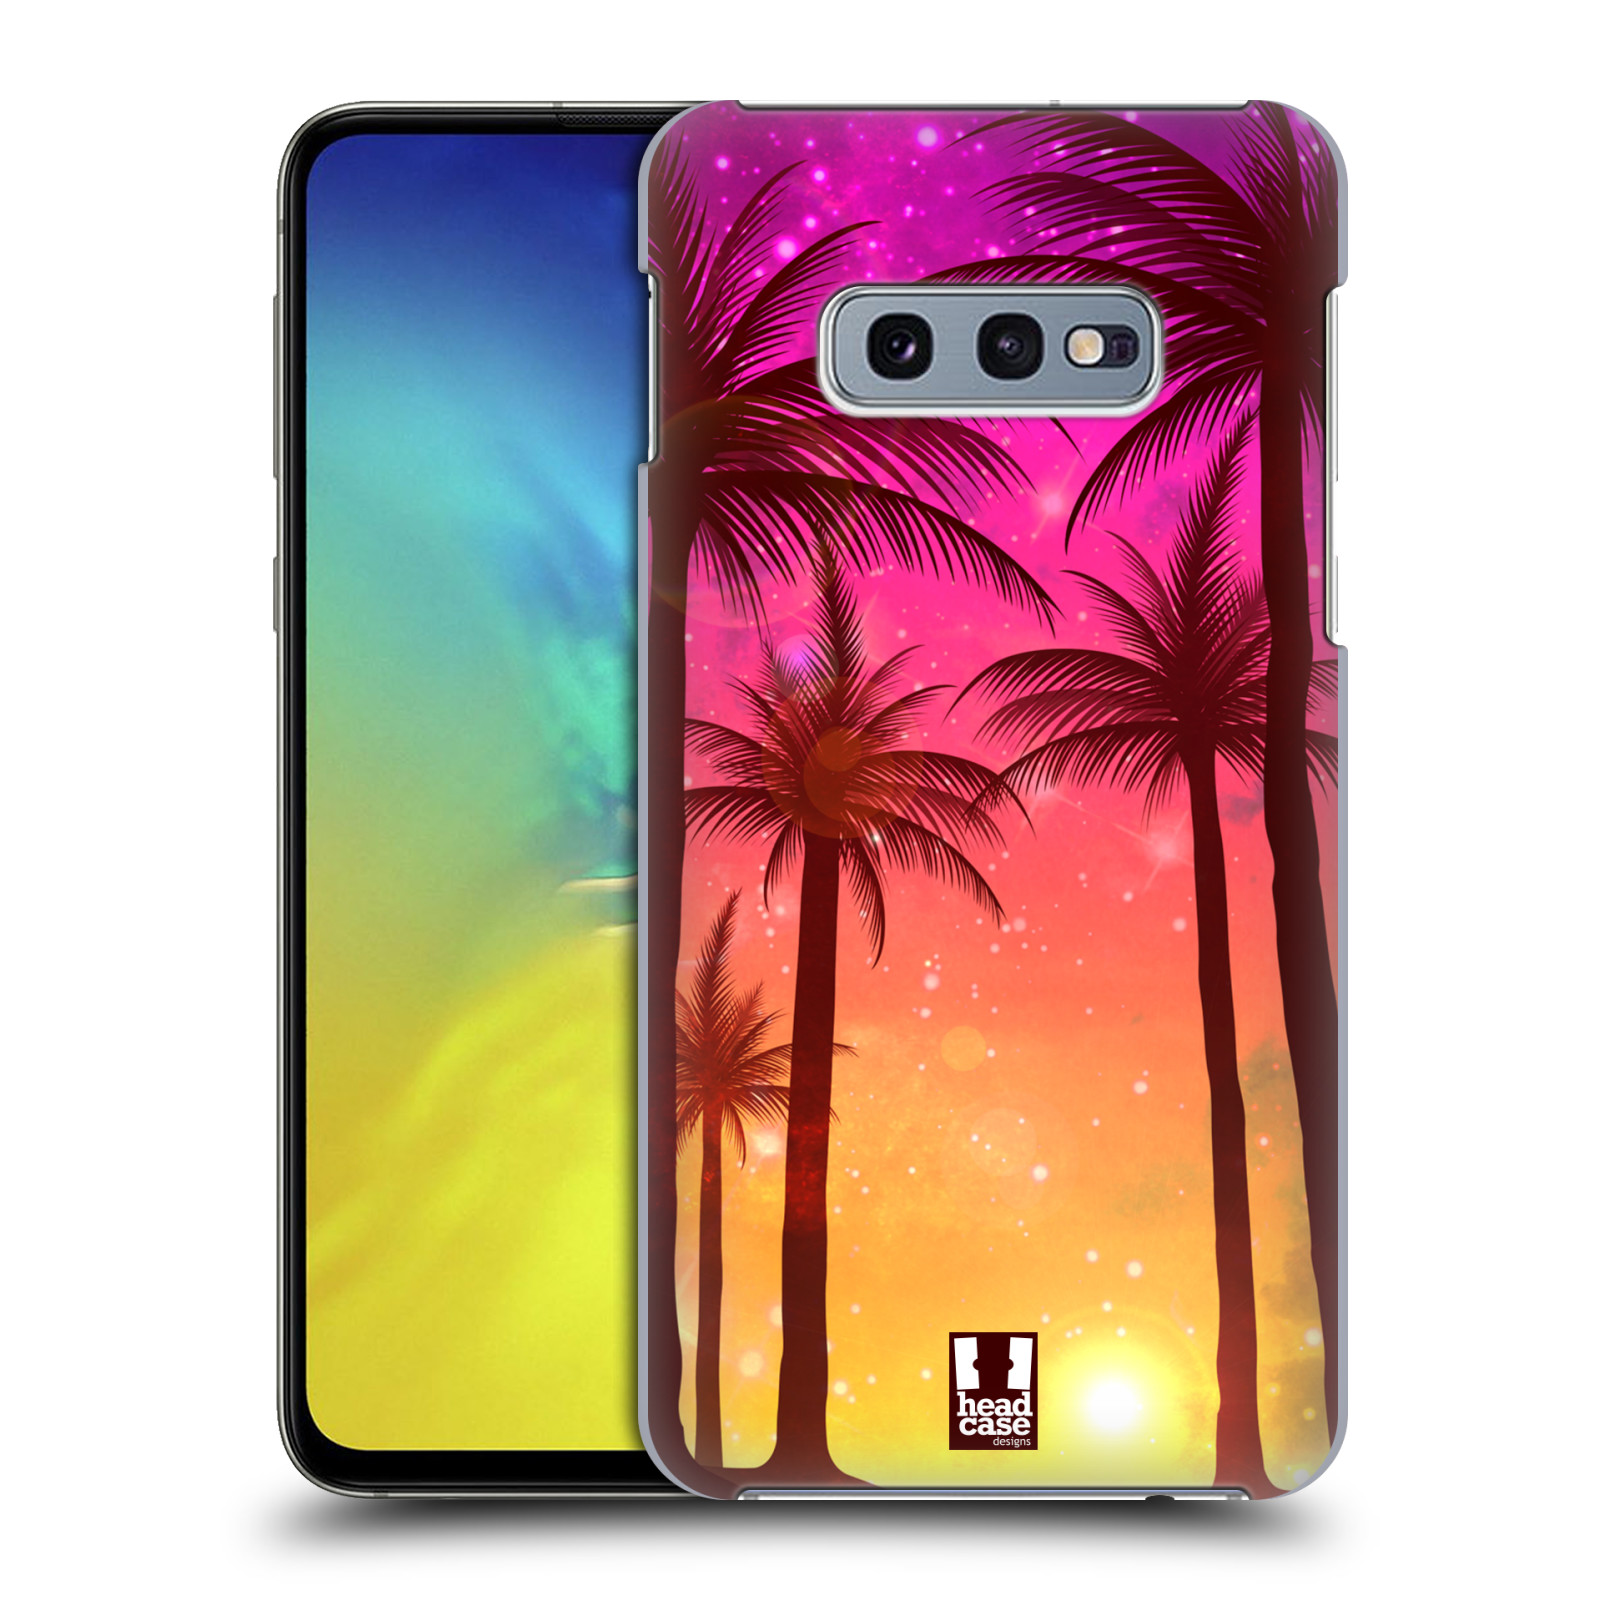 Pouzdro na mobil Samsung Galaxy S10e - HEAD CASE - vzor Kreslený motiv silueta moře a palmy RŮŽOVÁ